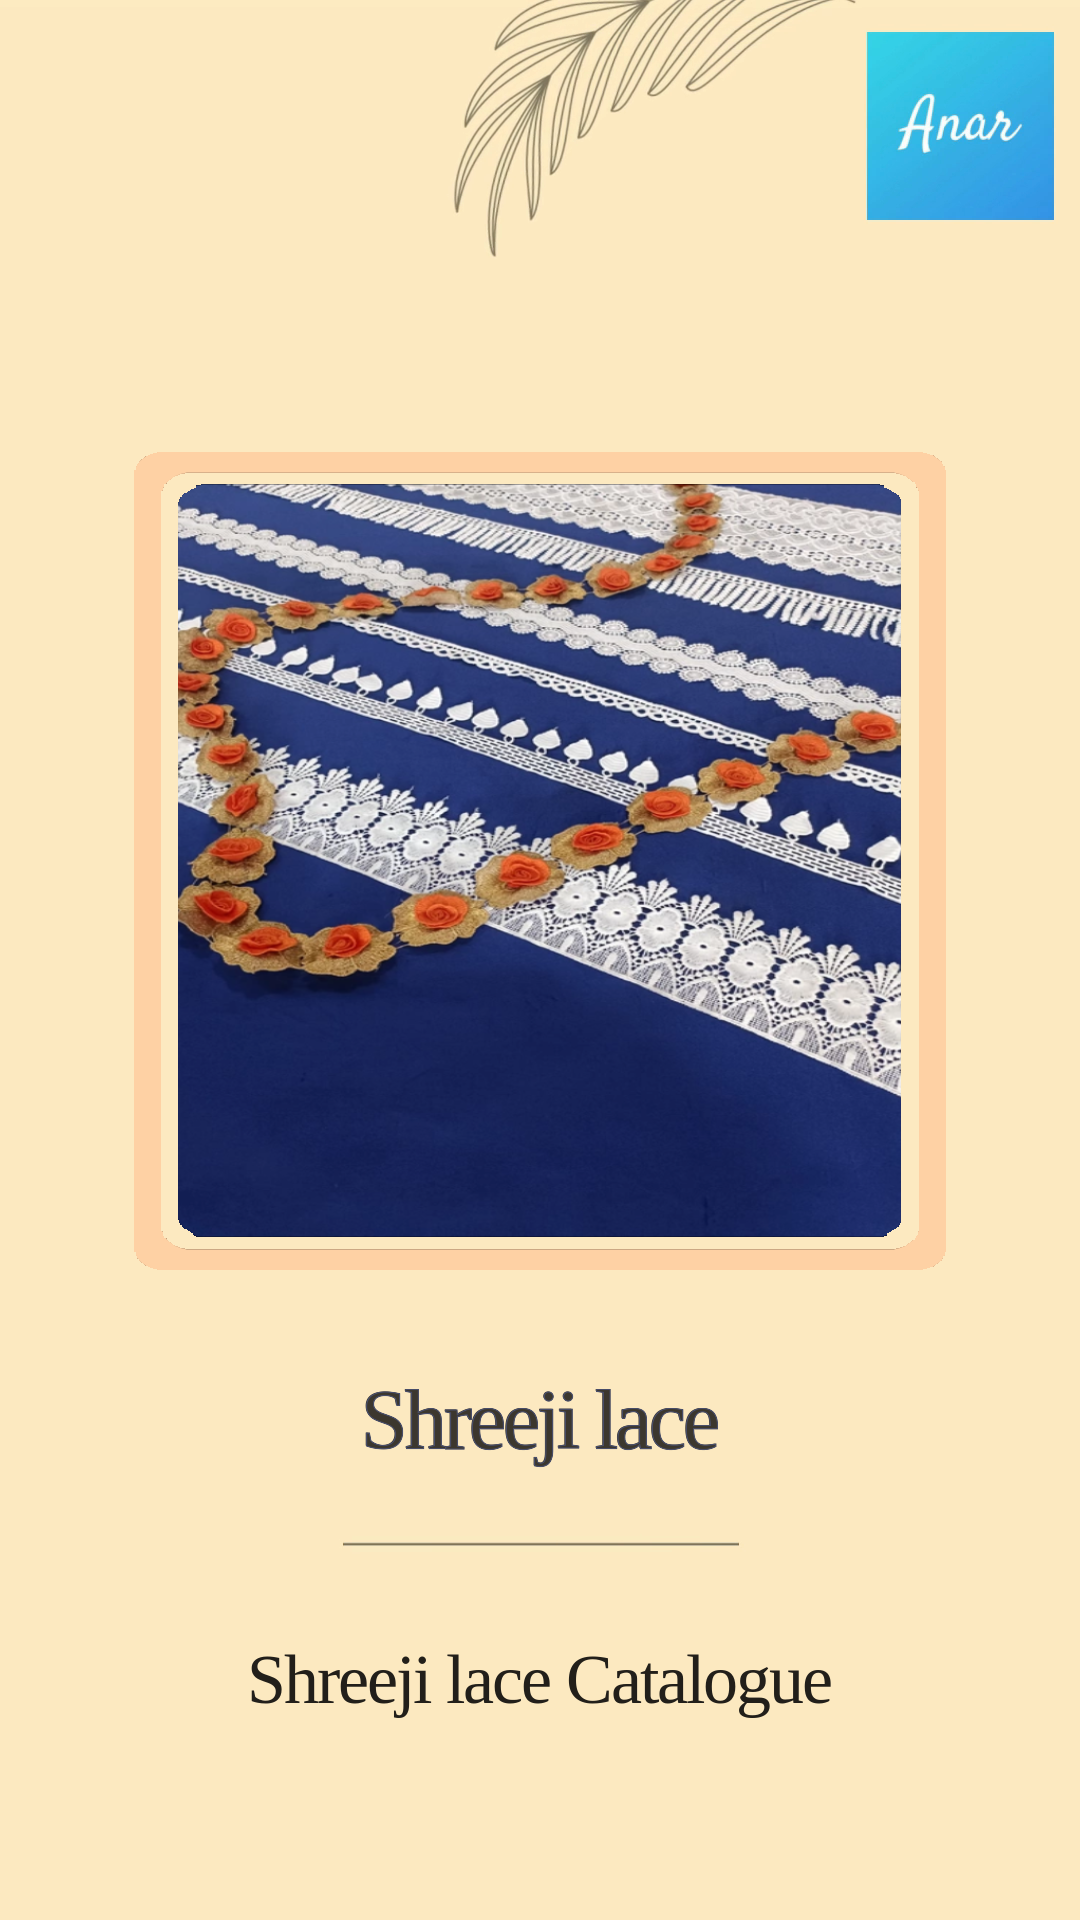 Thumbnail of video titled Shreeji lace